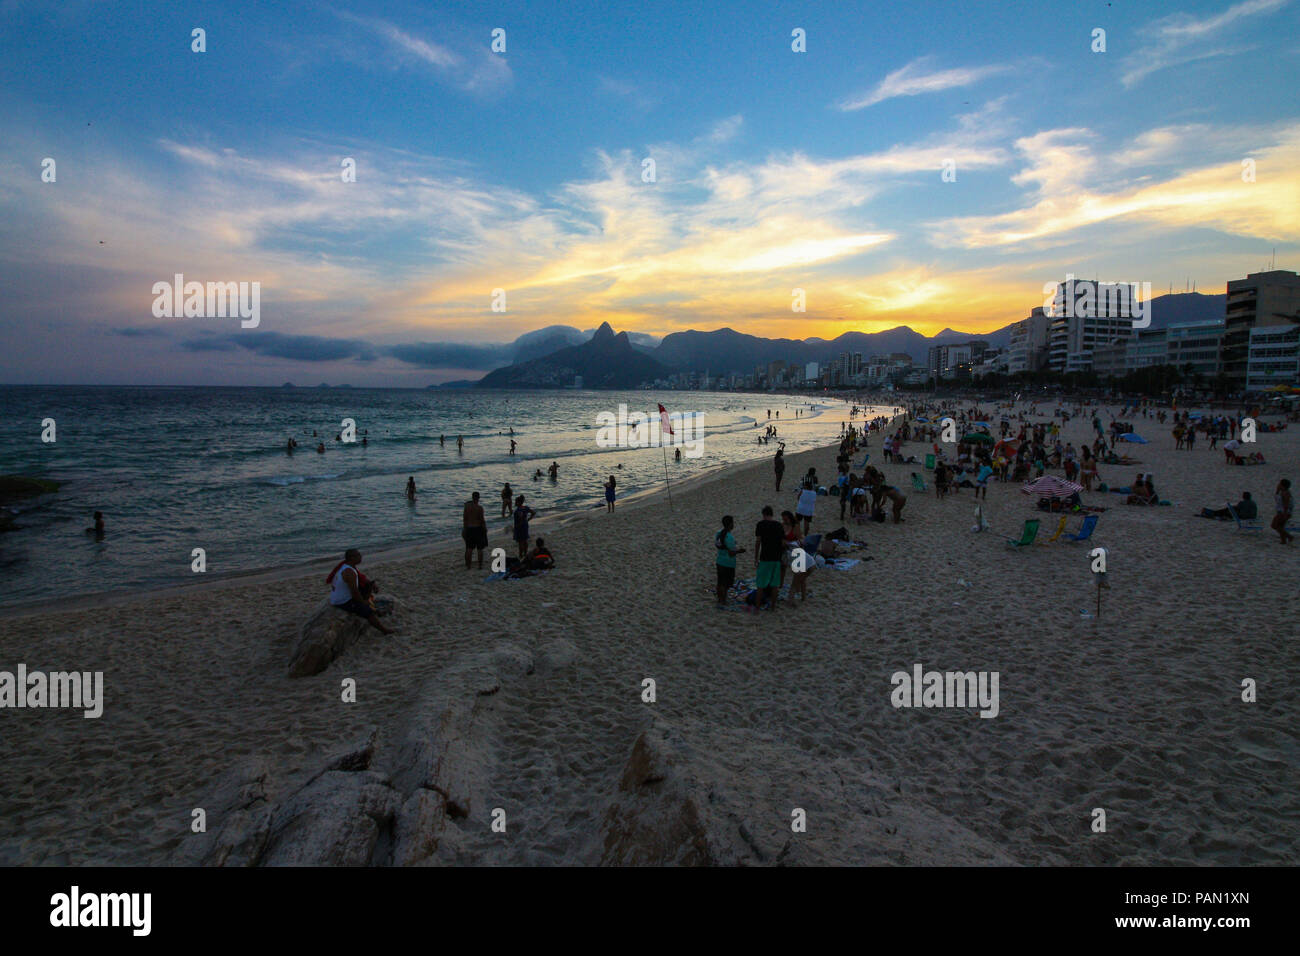 Arpoador e Ipanema Carioca spiagge durante il tramonto. Una delle principali attrazioni turistiche di Rio de Janeiro in Brasile. Foto Stock